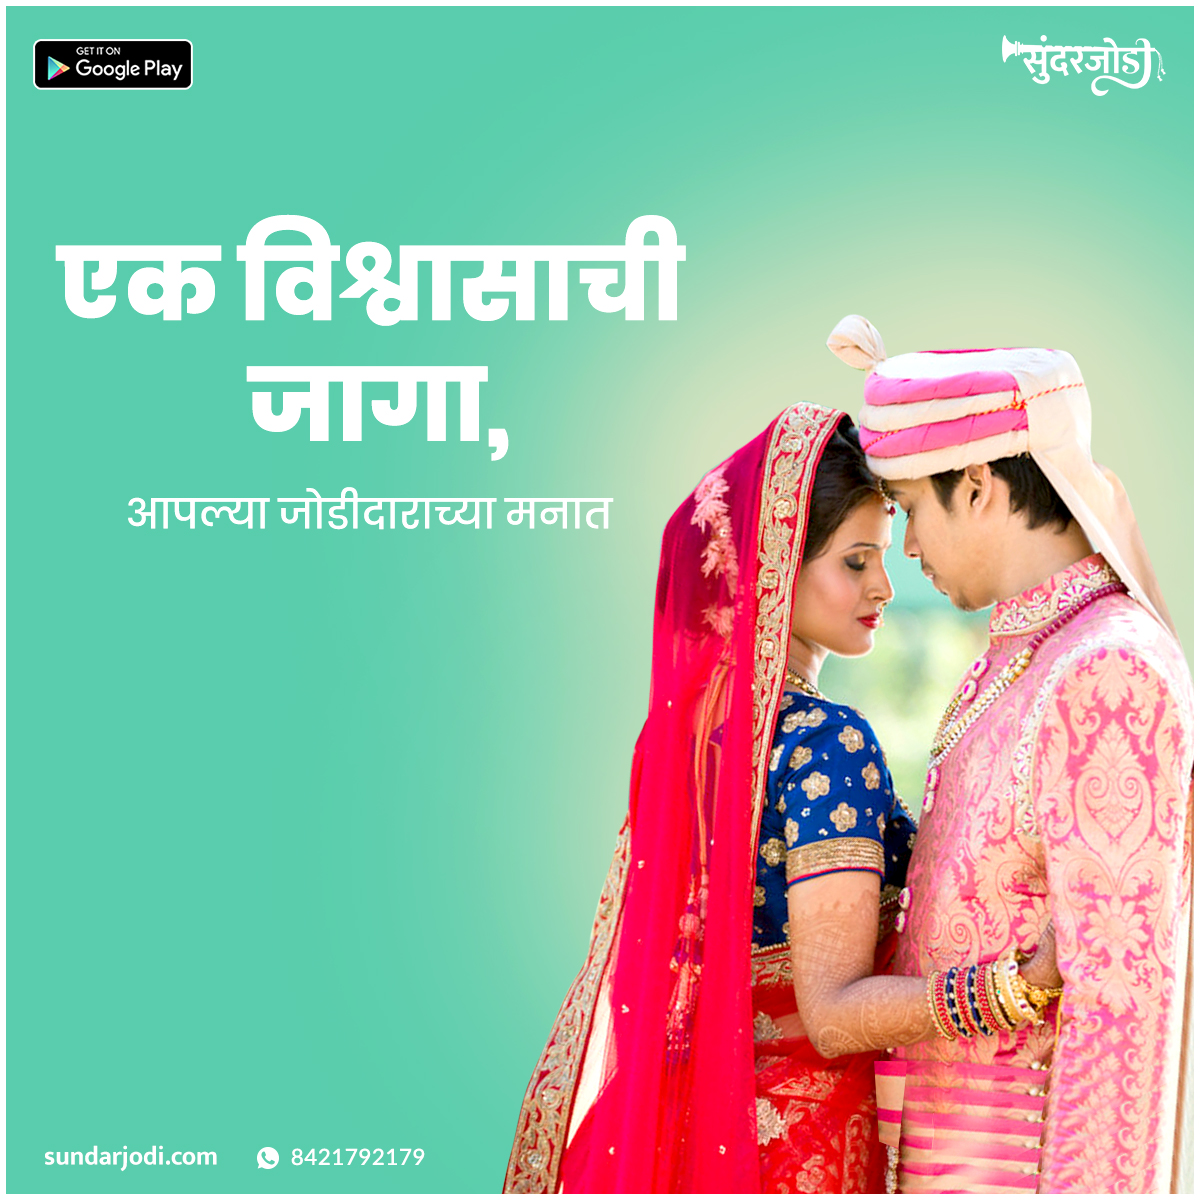 Marathi Vivah
Marathi matrimony
Marathi marriage bureau